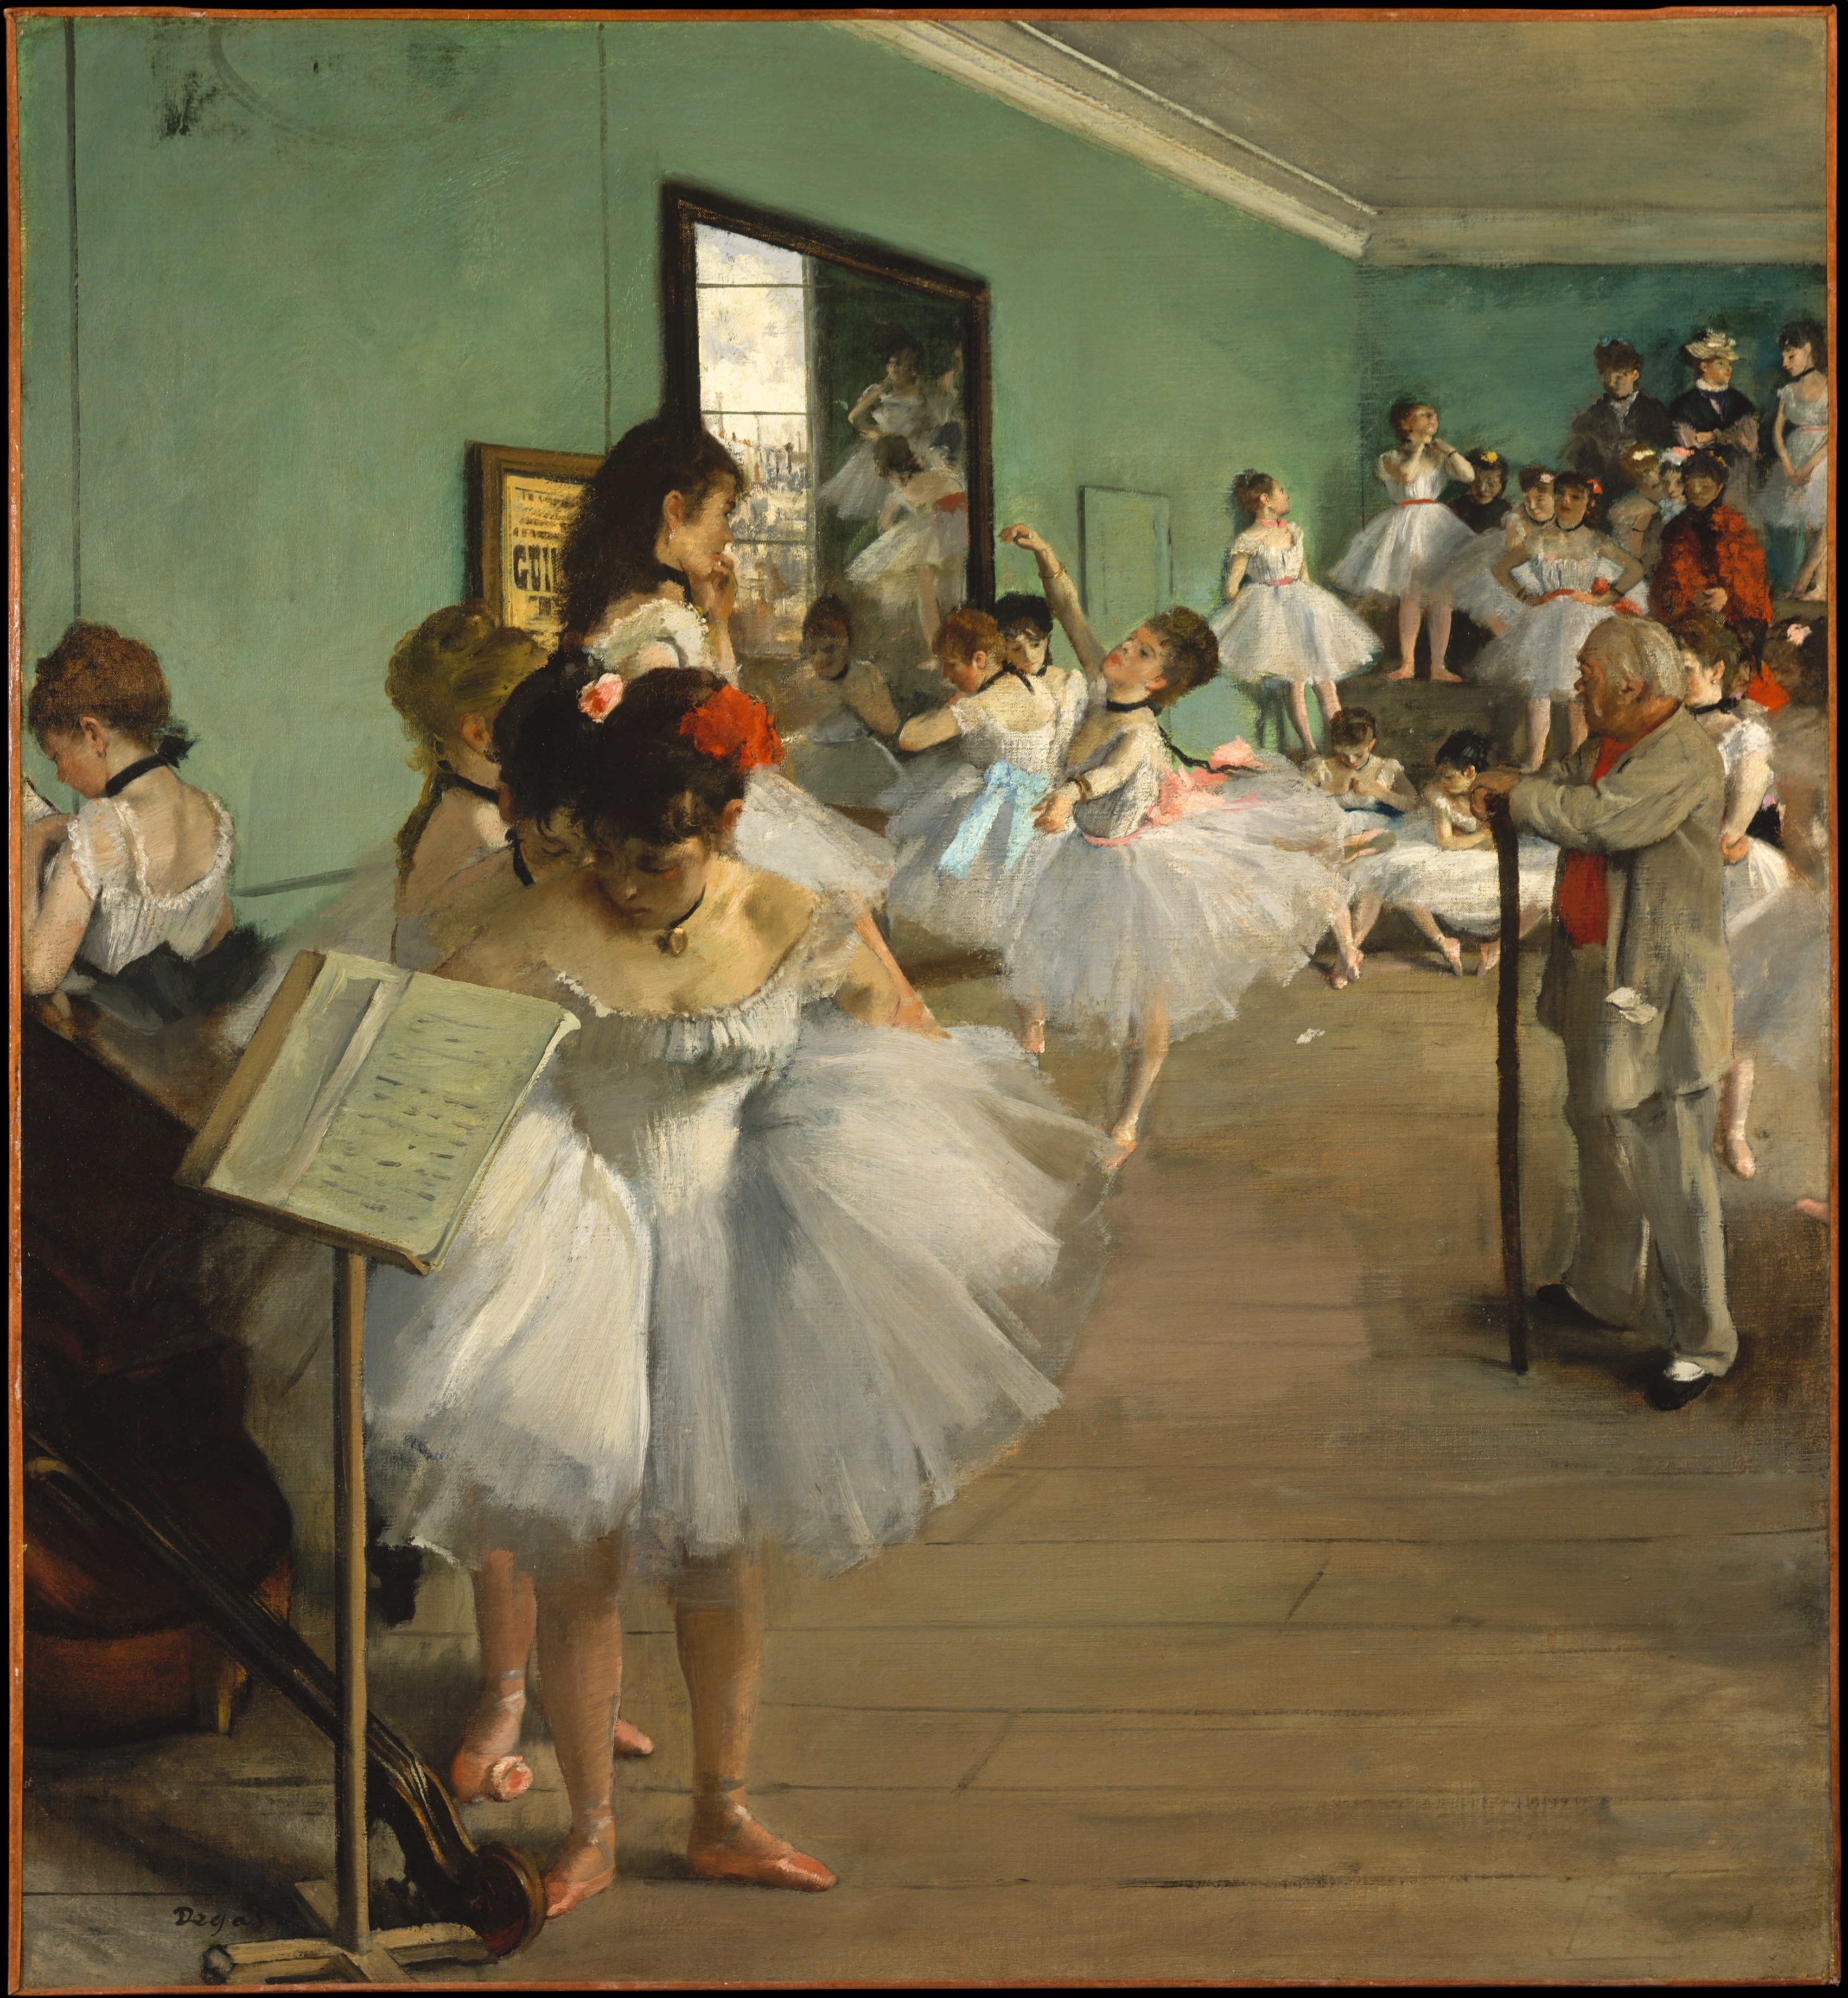 Die Tanzstunde by Edgar Degas - 1874 - 83.5 x 77.2 cm Metropolitan Museum of Art